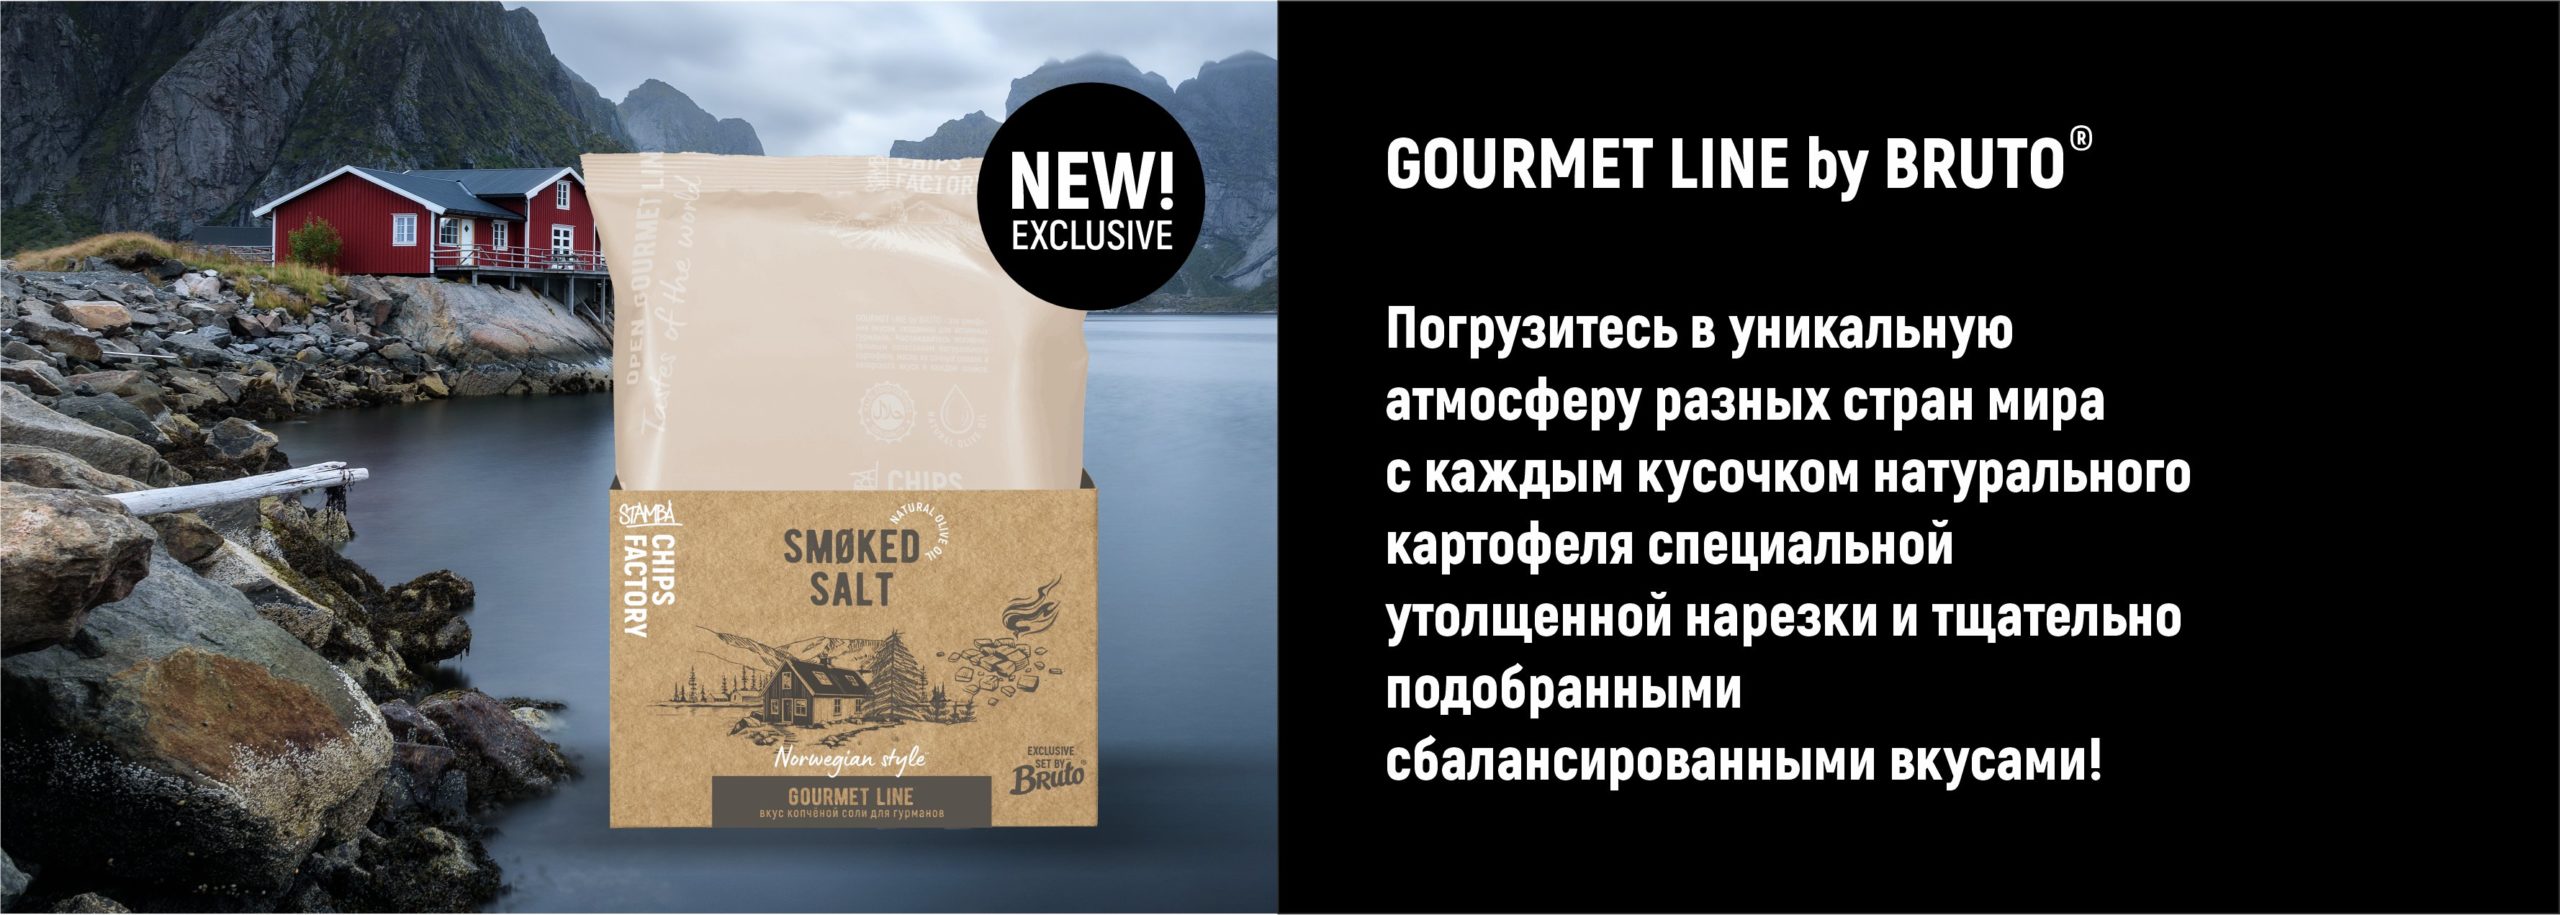 banner gourmet 02